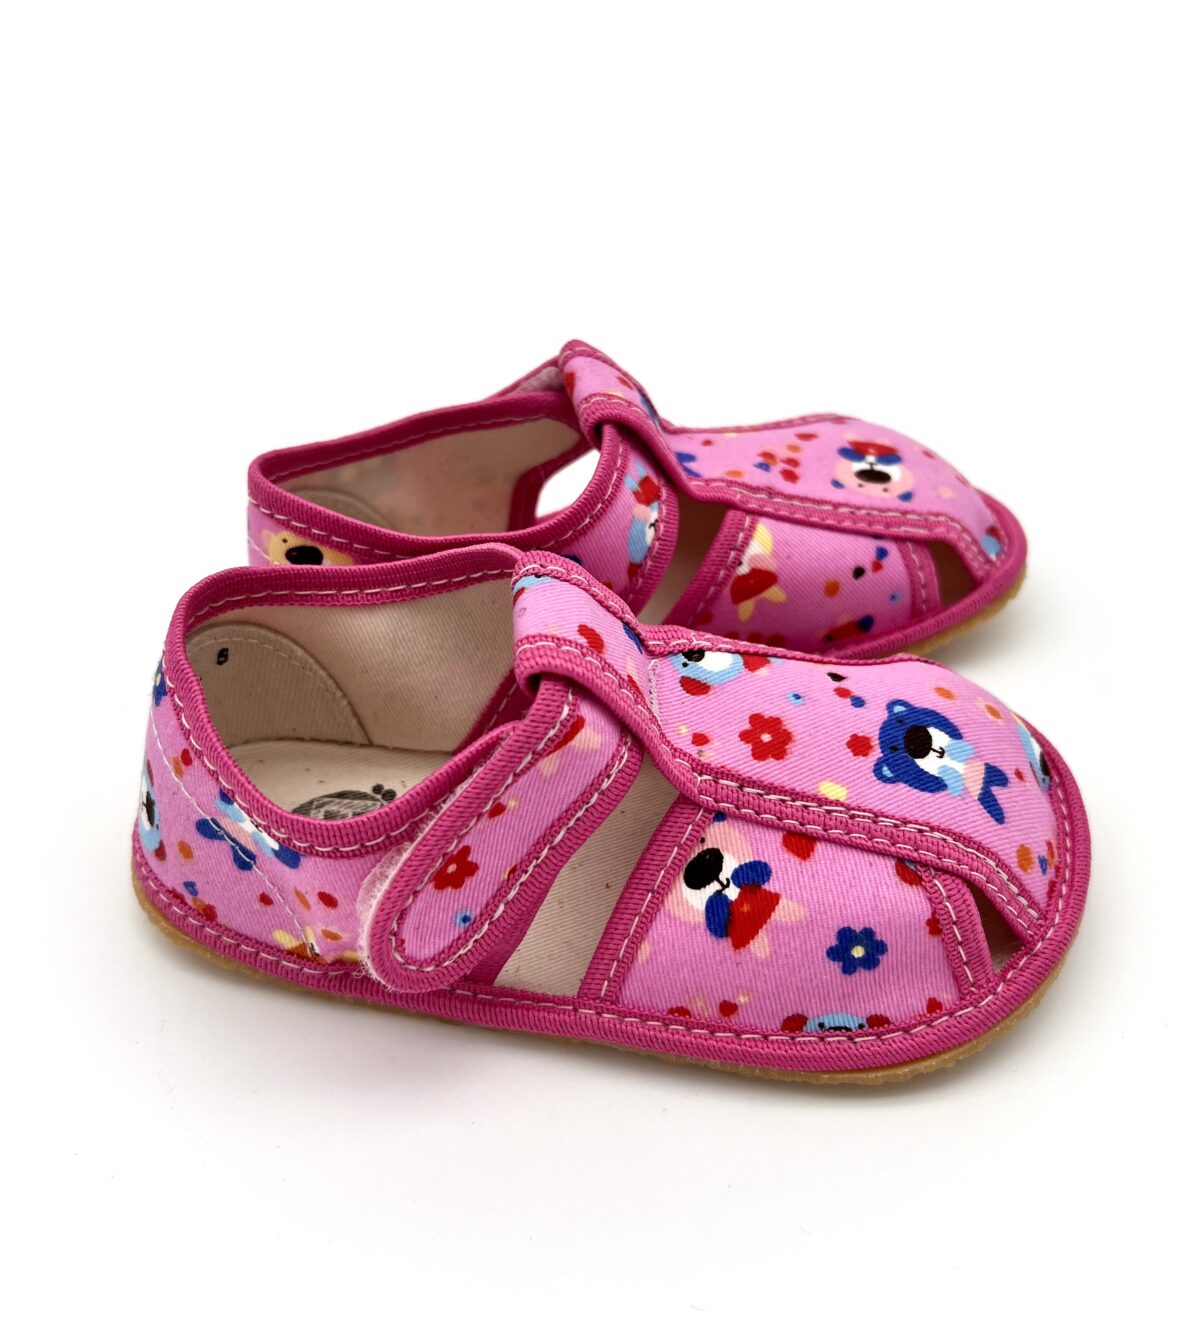 Baby Bare sisejalatsid Pink Teddy Laste barefoot jalatsid - HellyK - Kvaliteetsed lasteriided, villariided, barefoot jalatsid